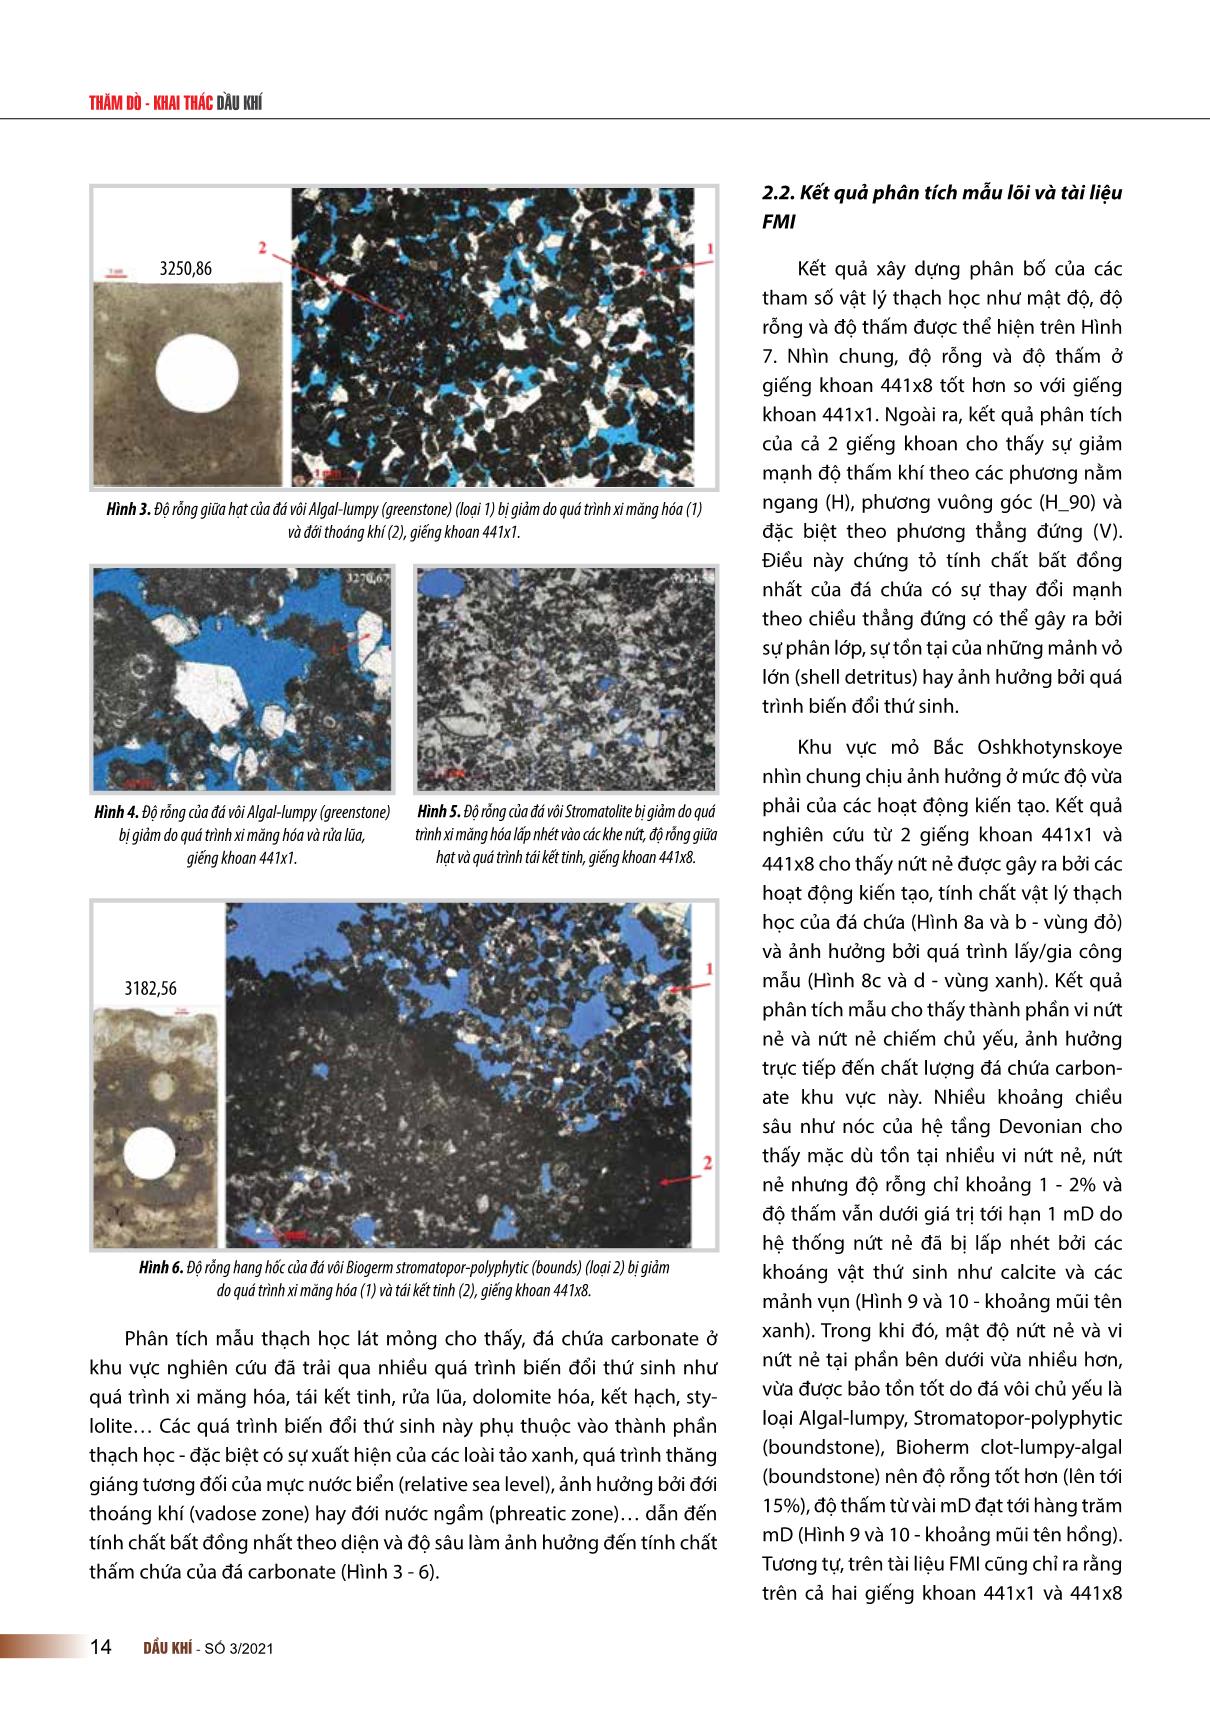 Đặc trưng vật lý thạch học của đá chứa carbonate tuổi devonian mỏ Bắc Oshkhotynskoye, liên bang Nga trang 4